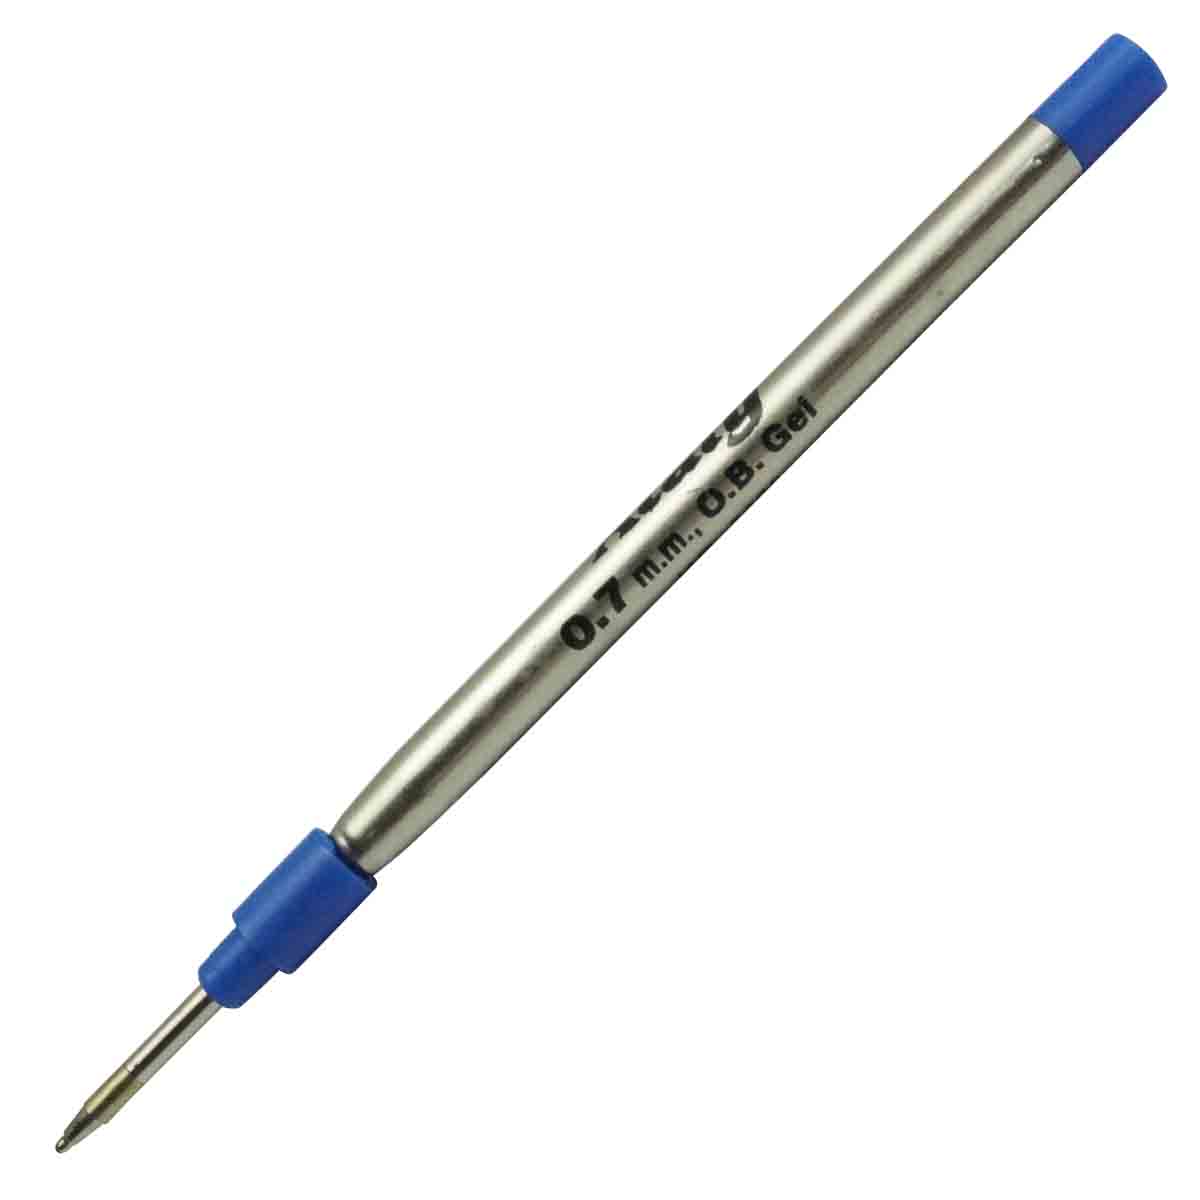 Ataly 0.7mm Blue  Ball Pen Refill for Roller Ball Pens Model 71053